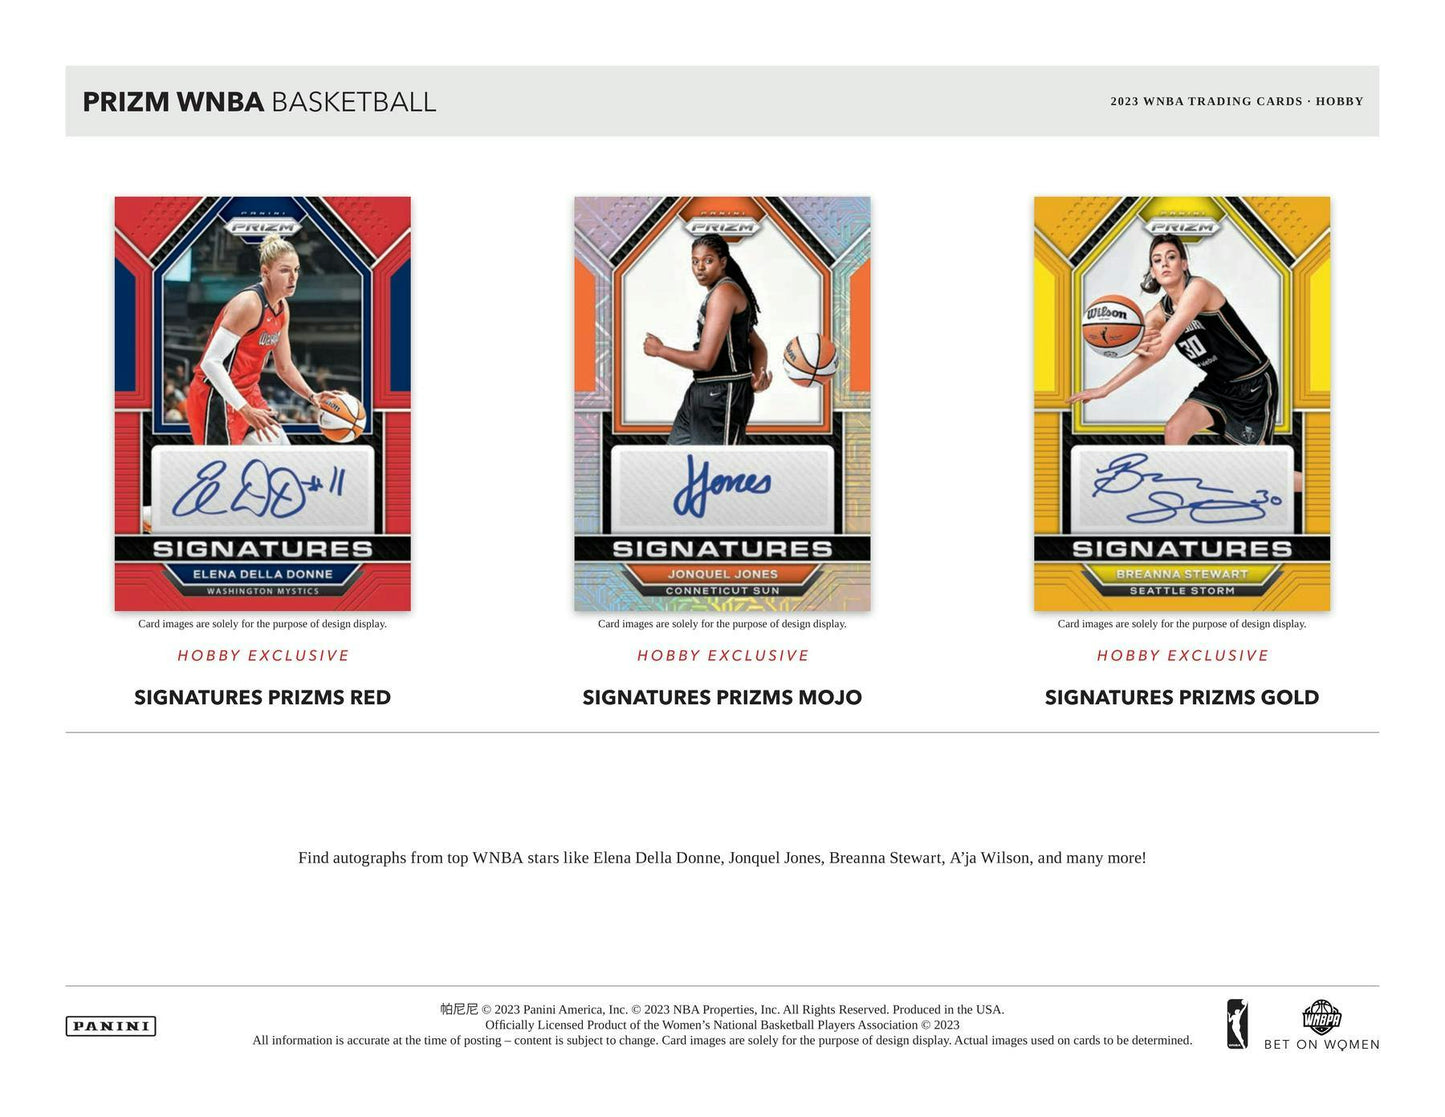 2023 Panini Prizm WNBA Basketball, Hobby Box